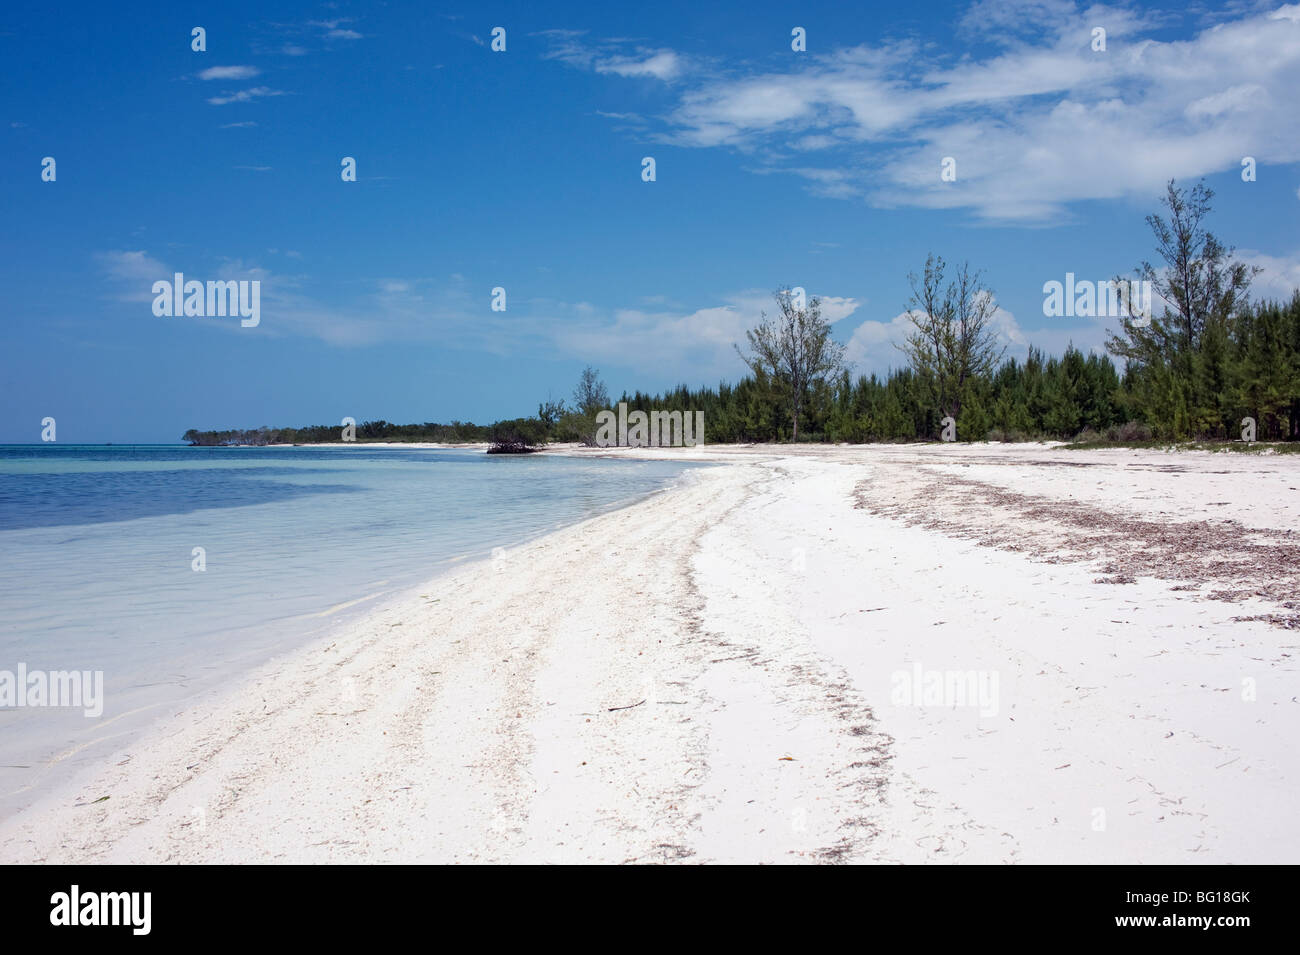 Verlassener Strand, Cayo Jutias, Pinar del Rメo, Kuba, Westindische Inseln, Karibik, Mittelamerika Stockfoto